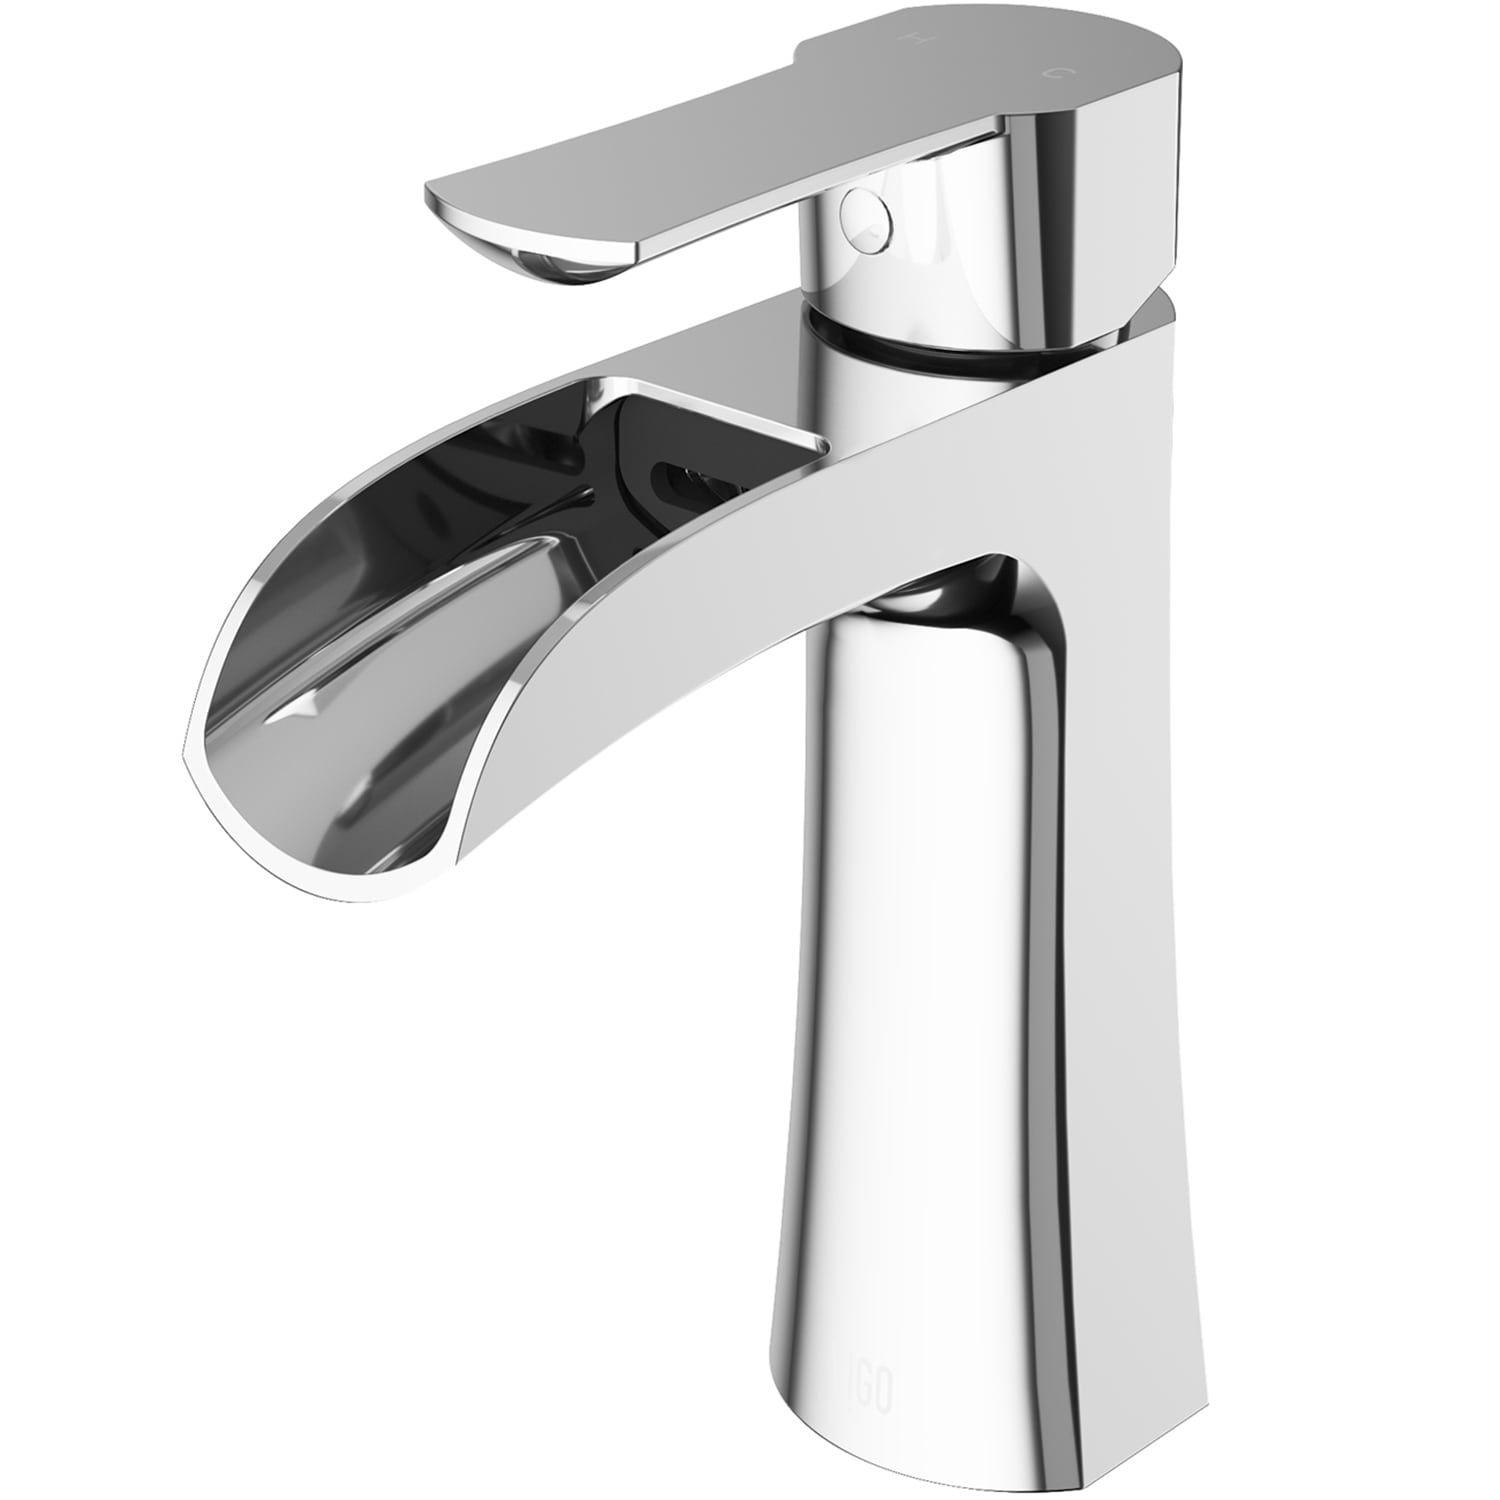 生活家電 調理機器 Paloma Bathroom Sink Faucets at Lowes.com